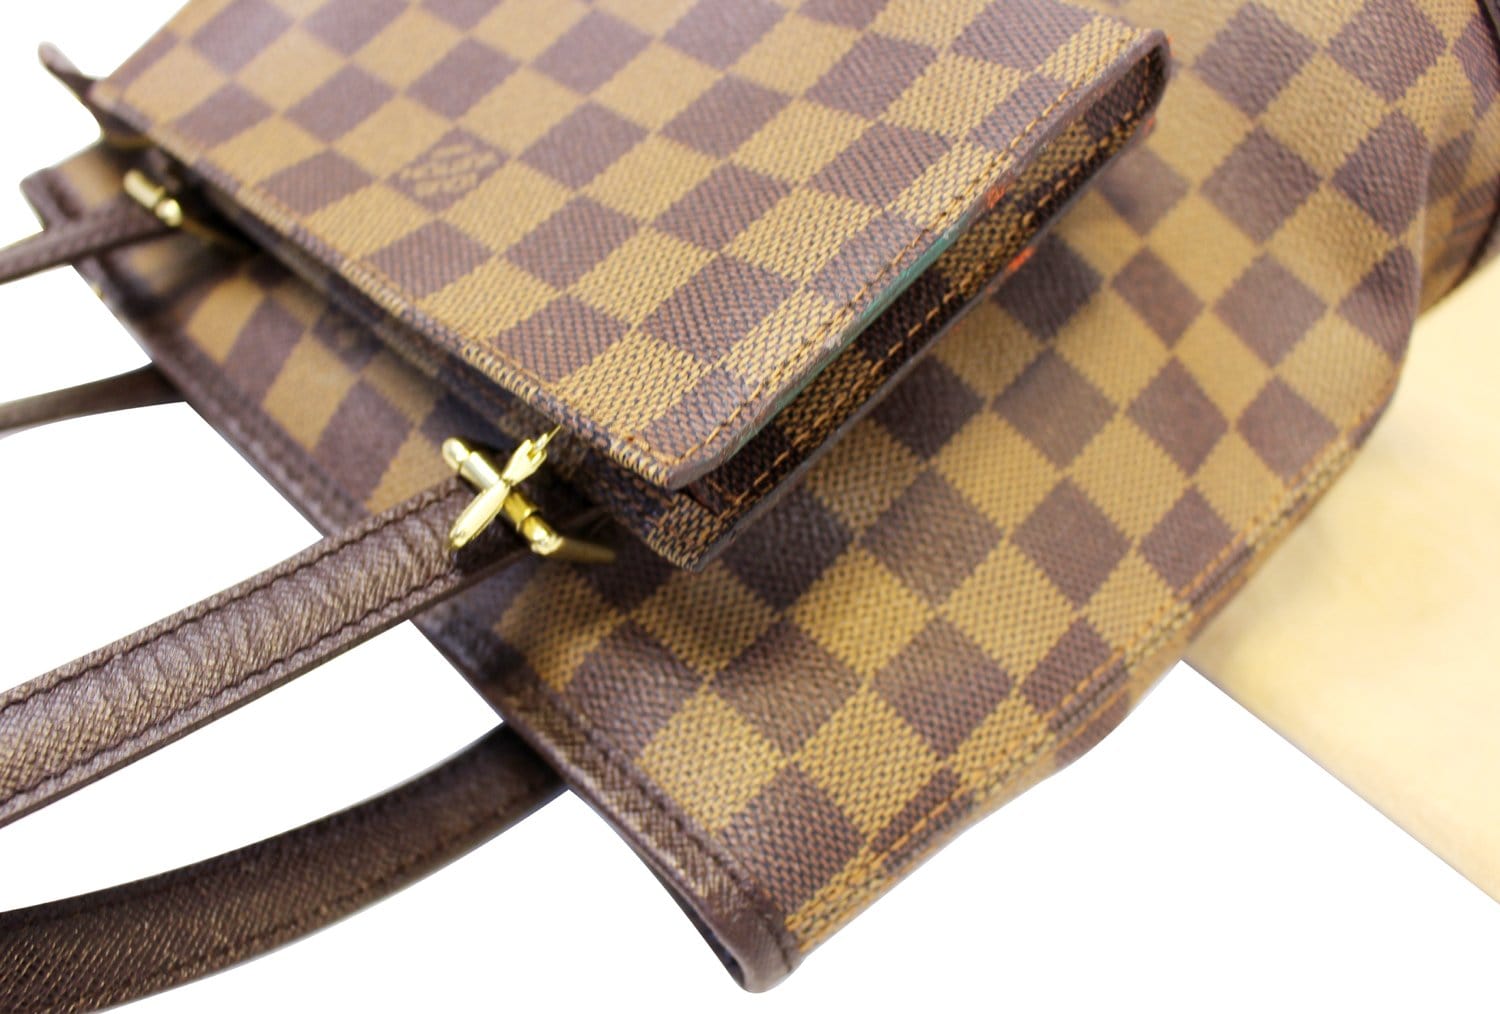 Authentic Louis Vuitton Damier Marais Bucket Shoulder Tote Bag N42240 LV  J4664